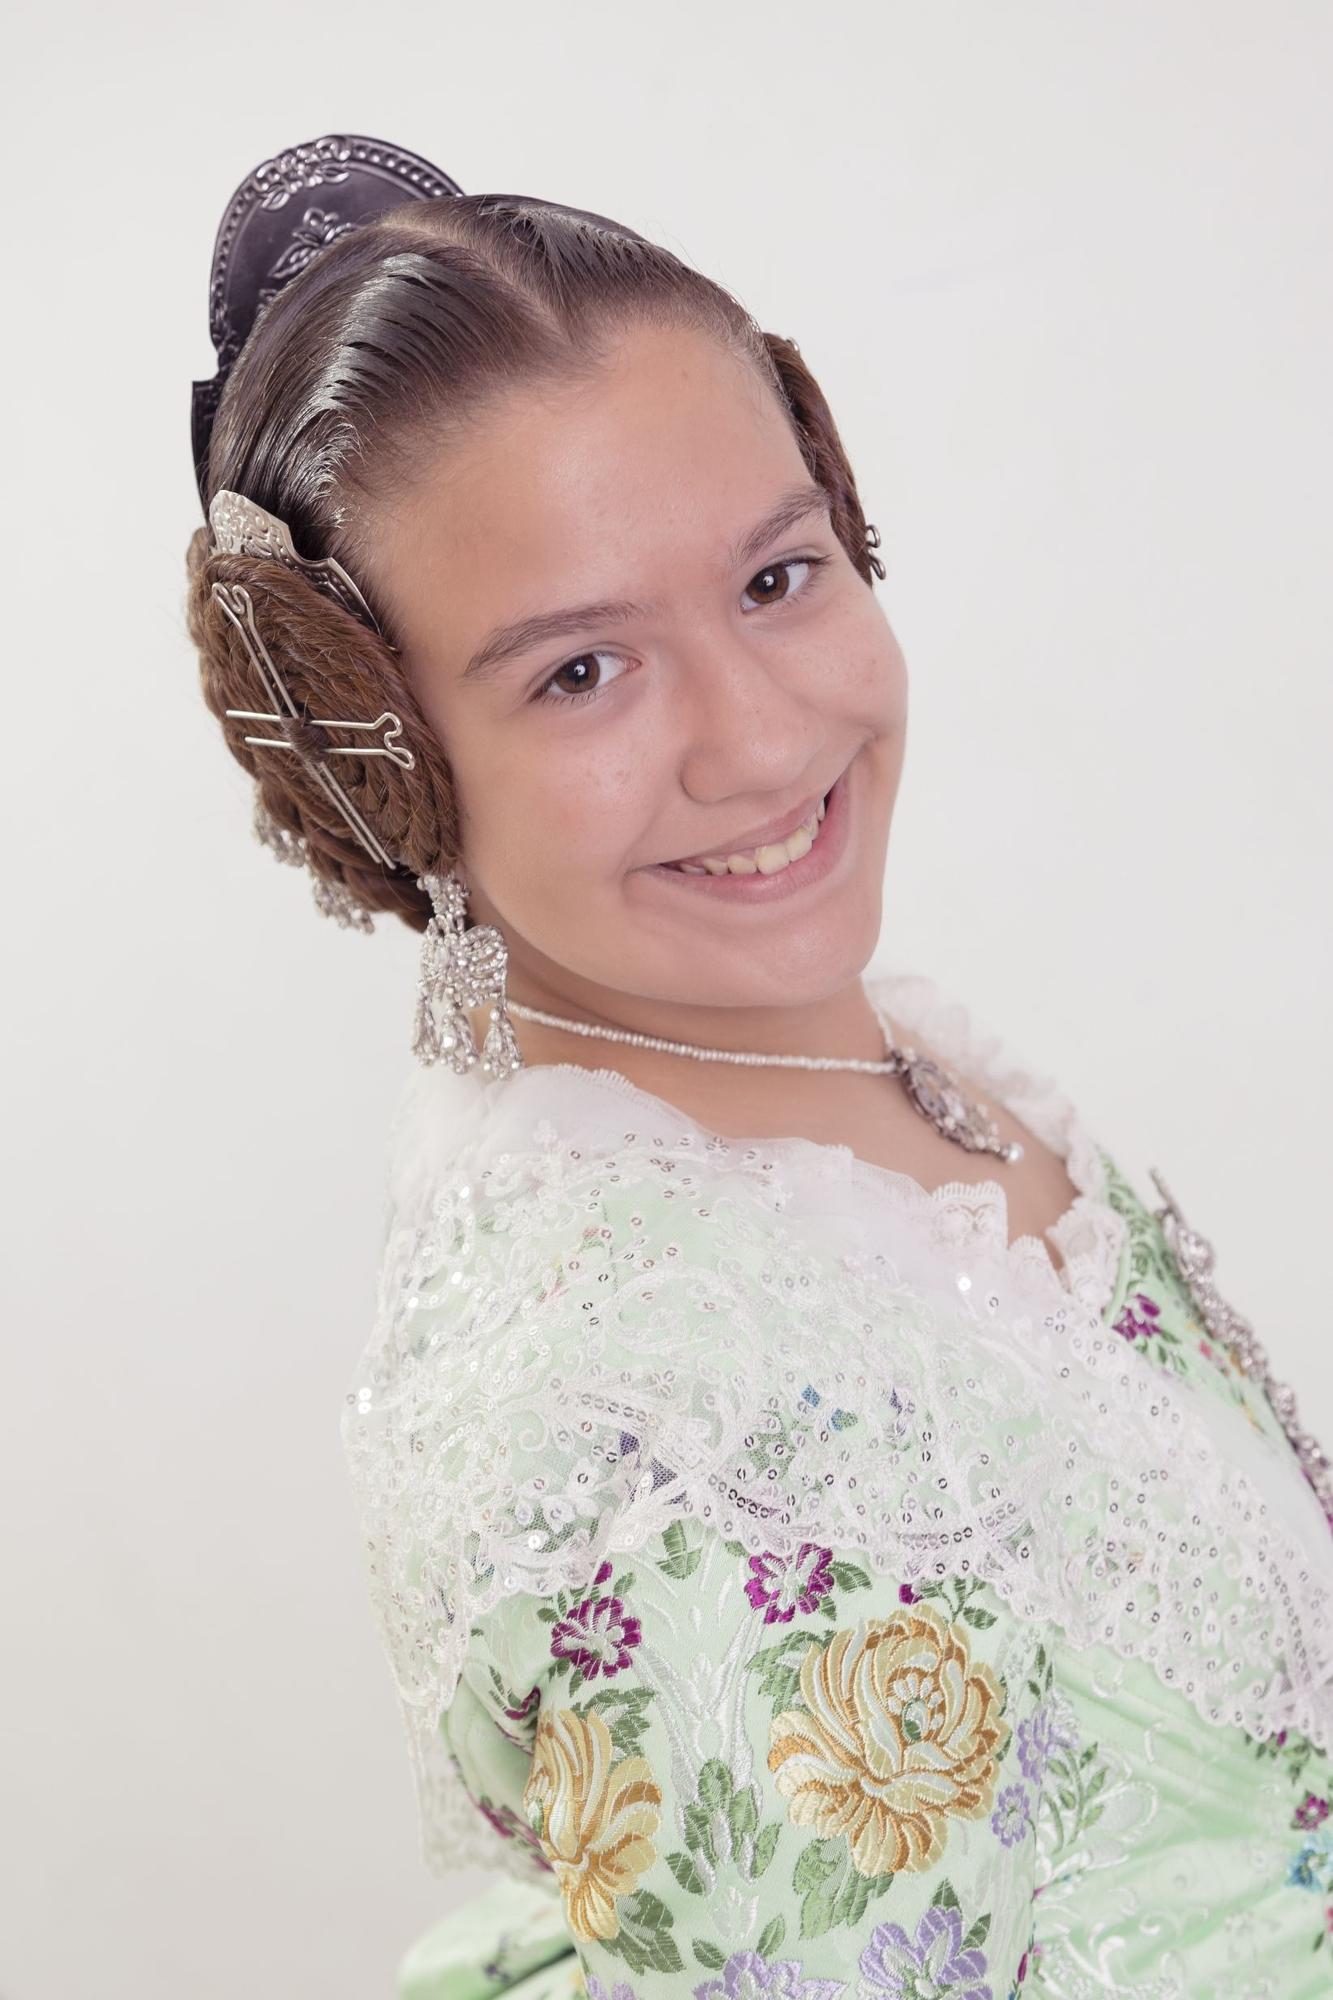 RUSSAFA A. Maria Amparo Gisbert Gimenez (Maestro Aguilar-Matias Perello)